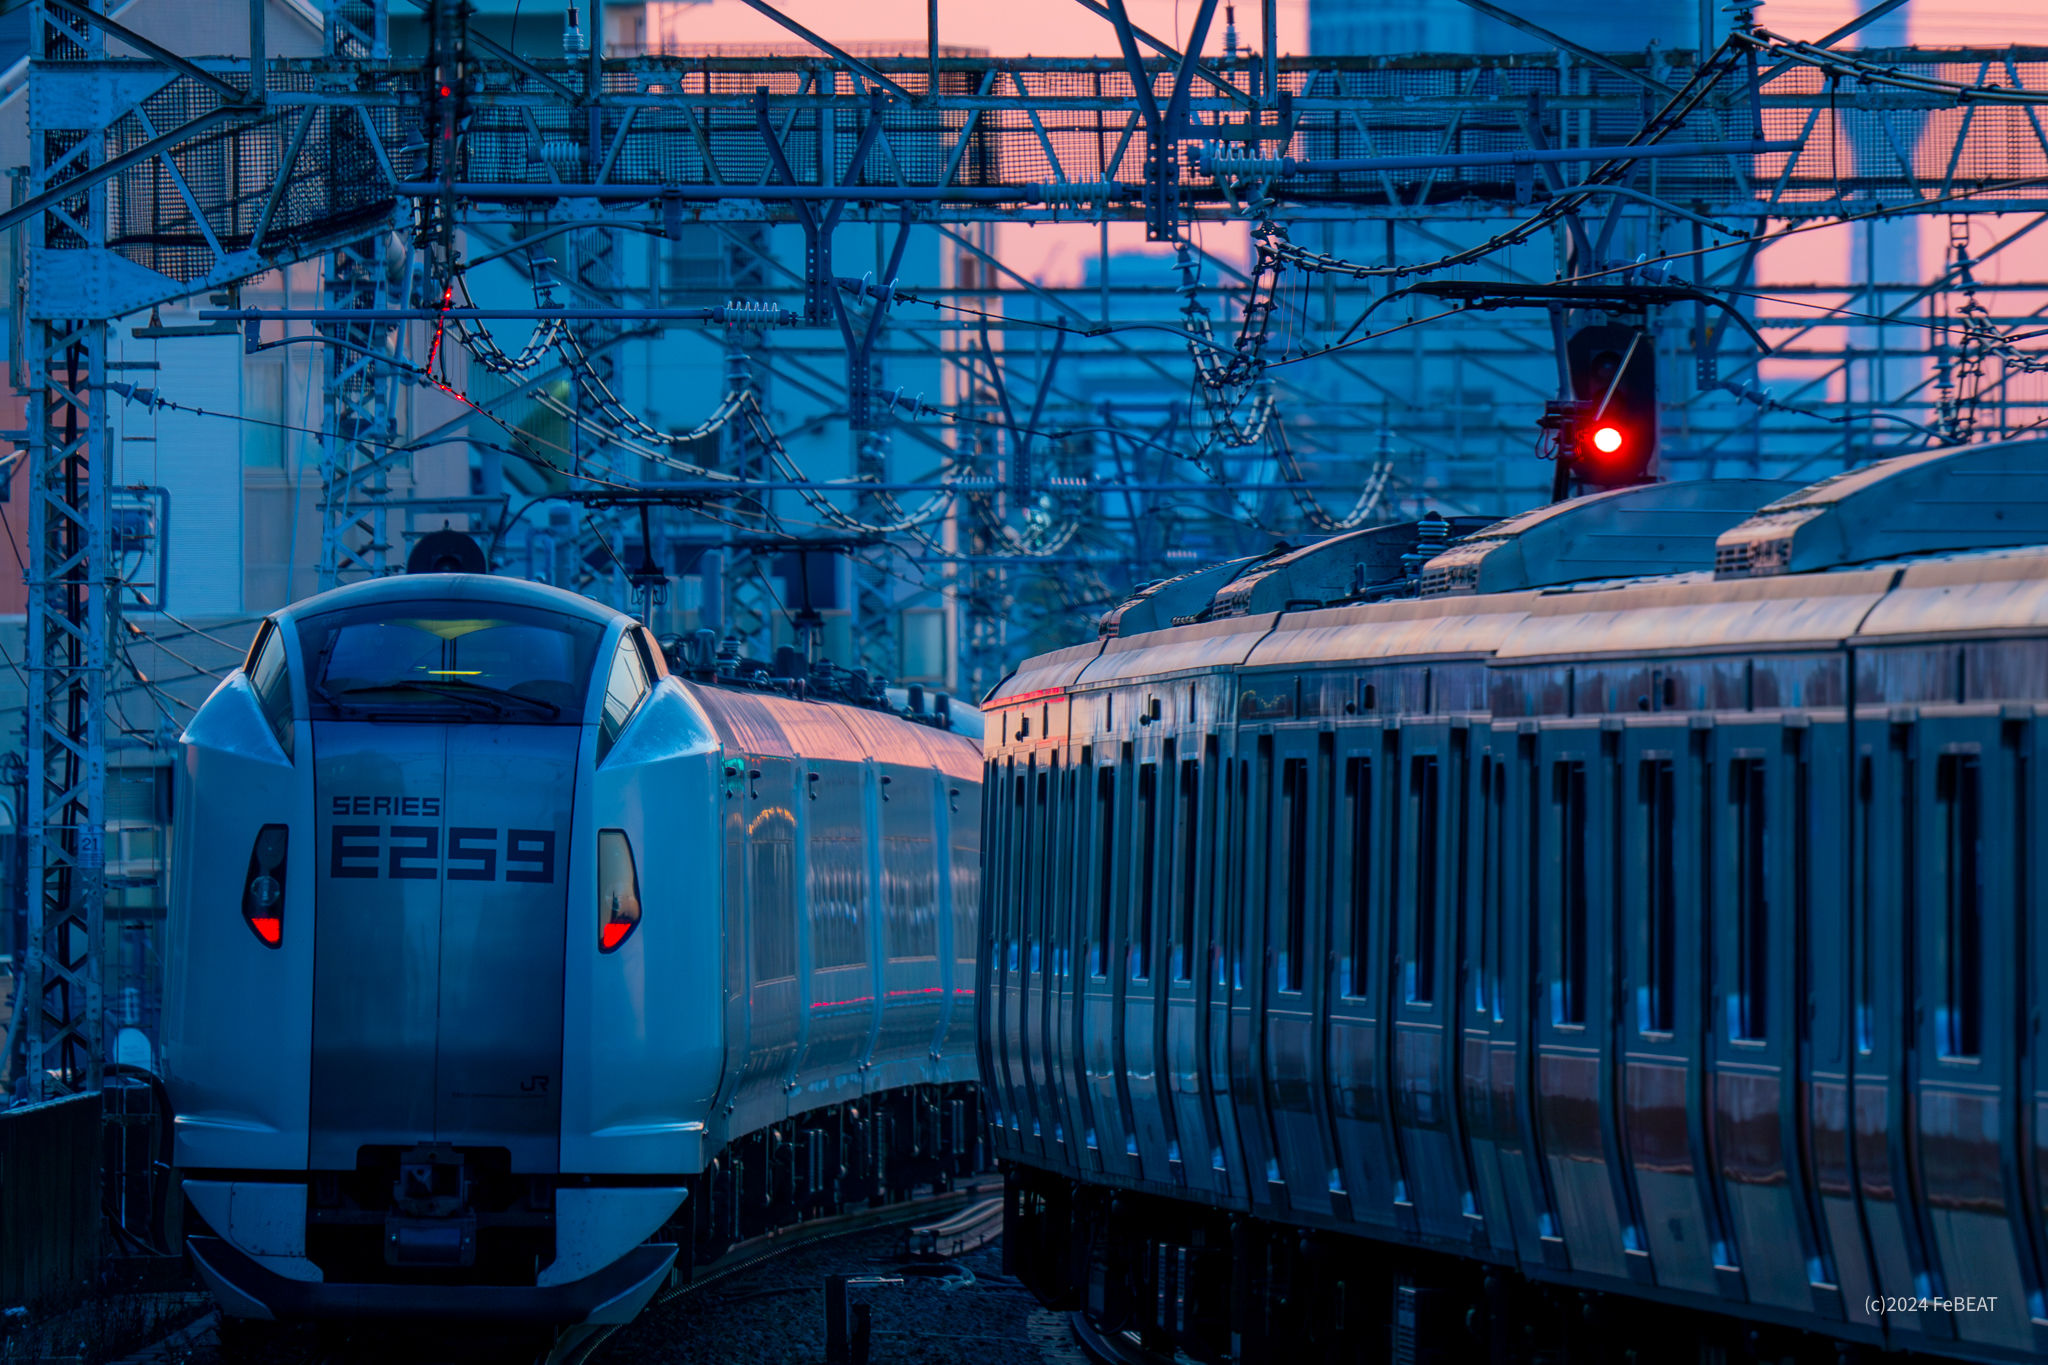 朝焼けの空にスカイツリーの見える中央快速線を吉祥寺から西荻窪へと走るE259系「成田エクスプレス」と離合するE233系